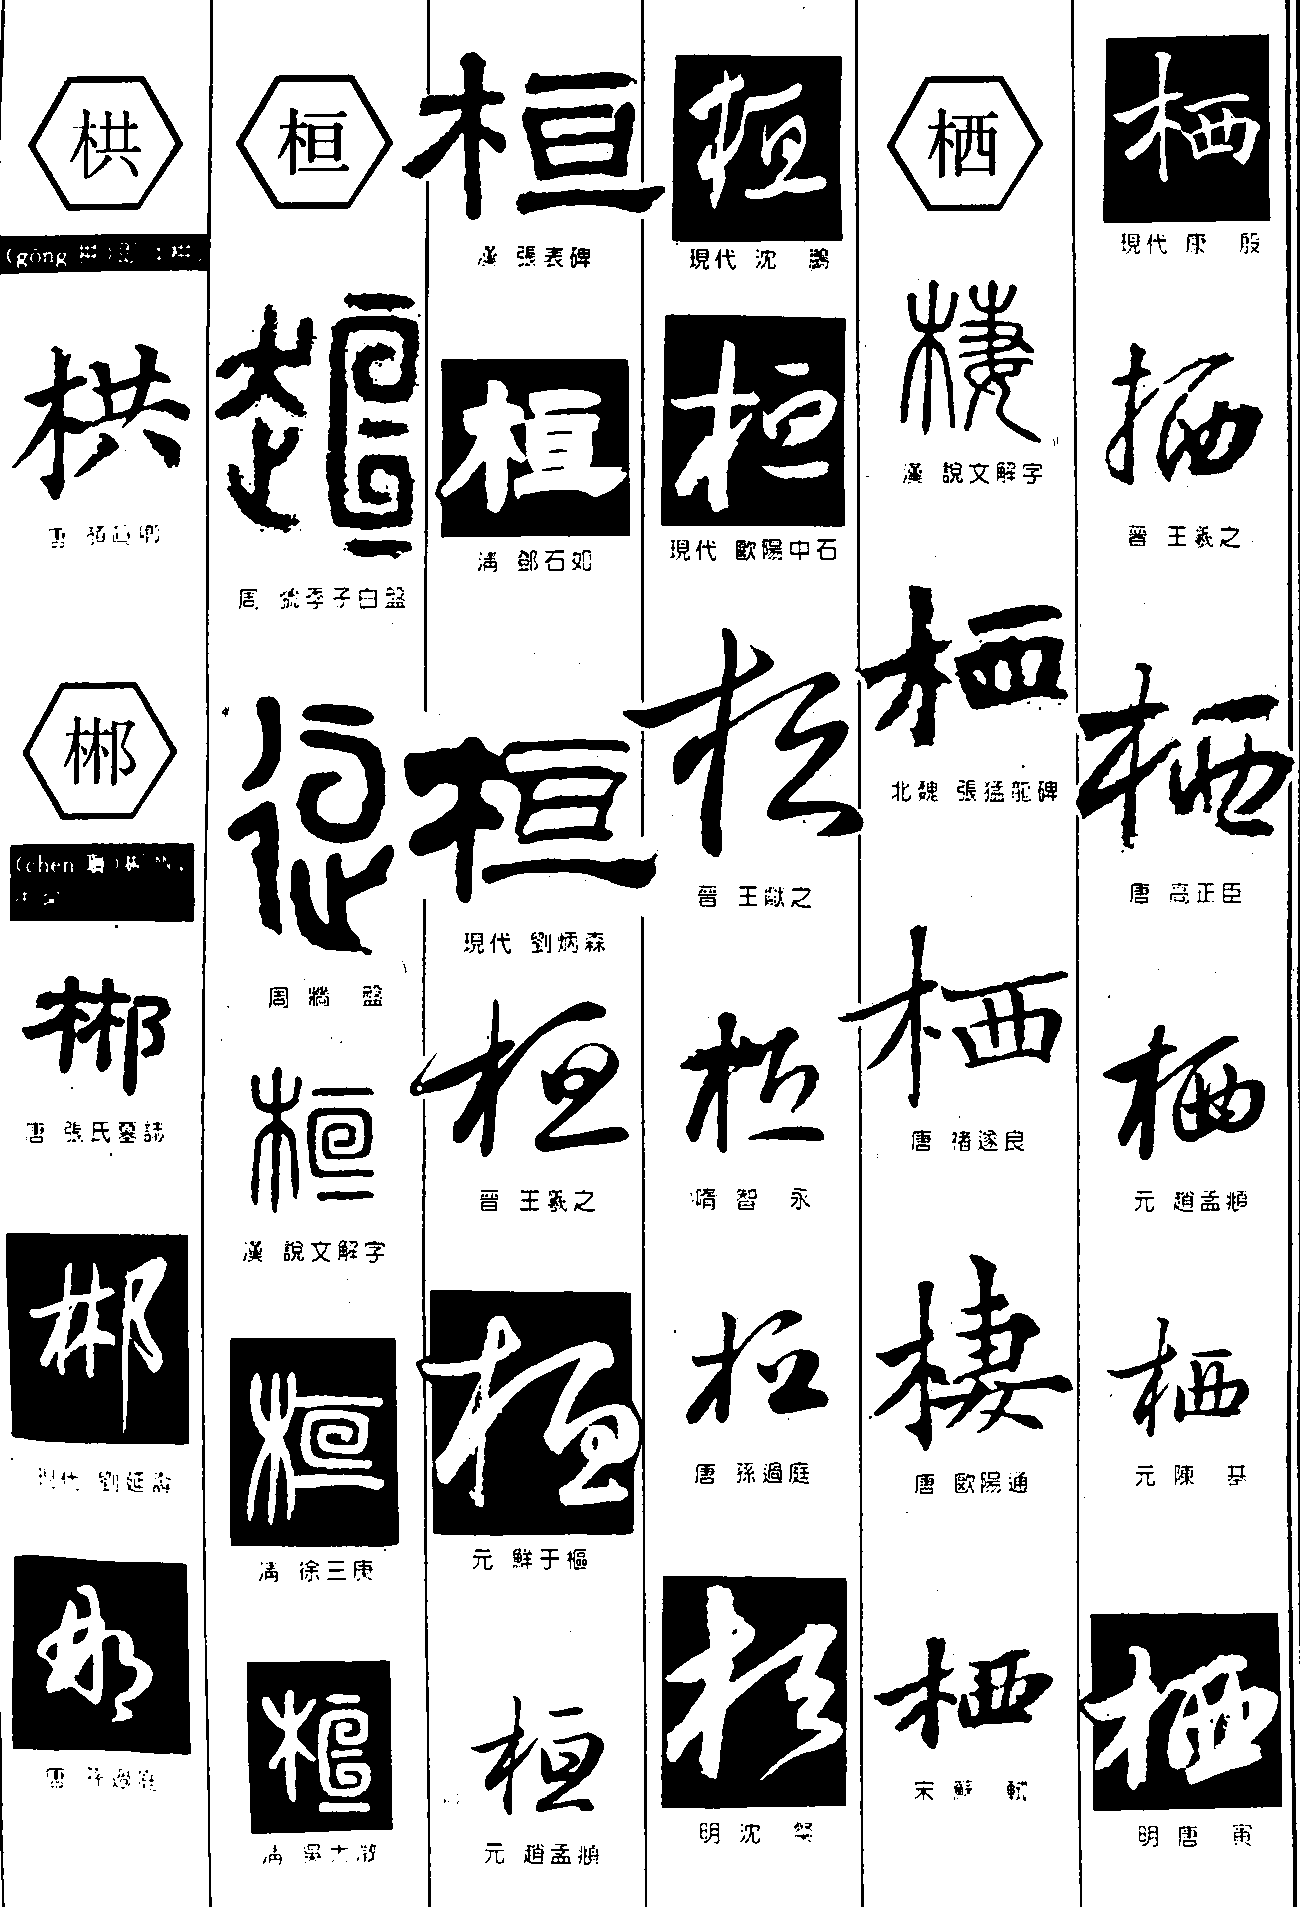 栱郴桓栖 艺术字 毛笔字 书法字 繁体 标志设计 